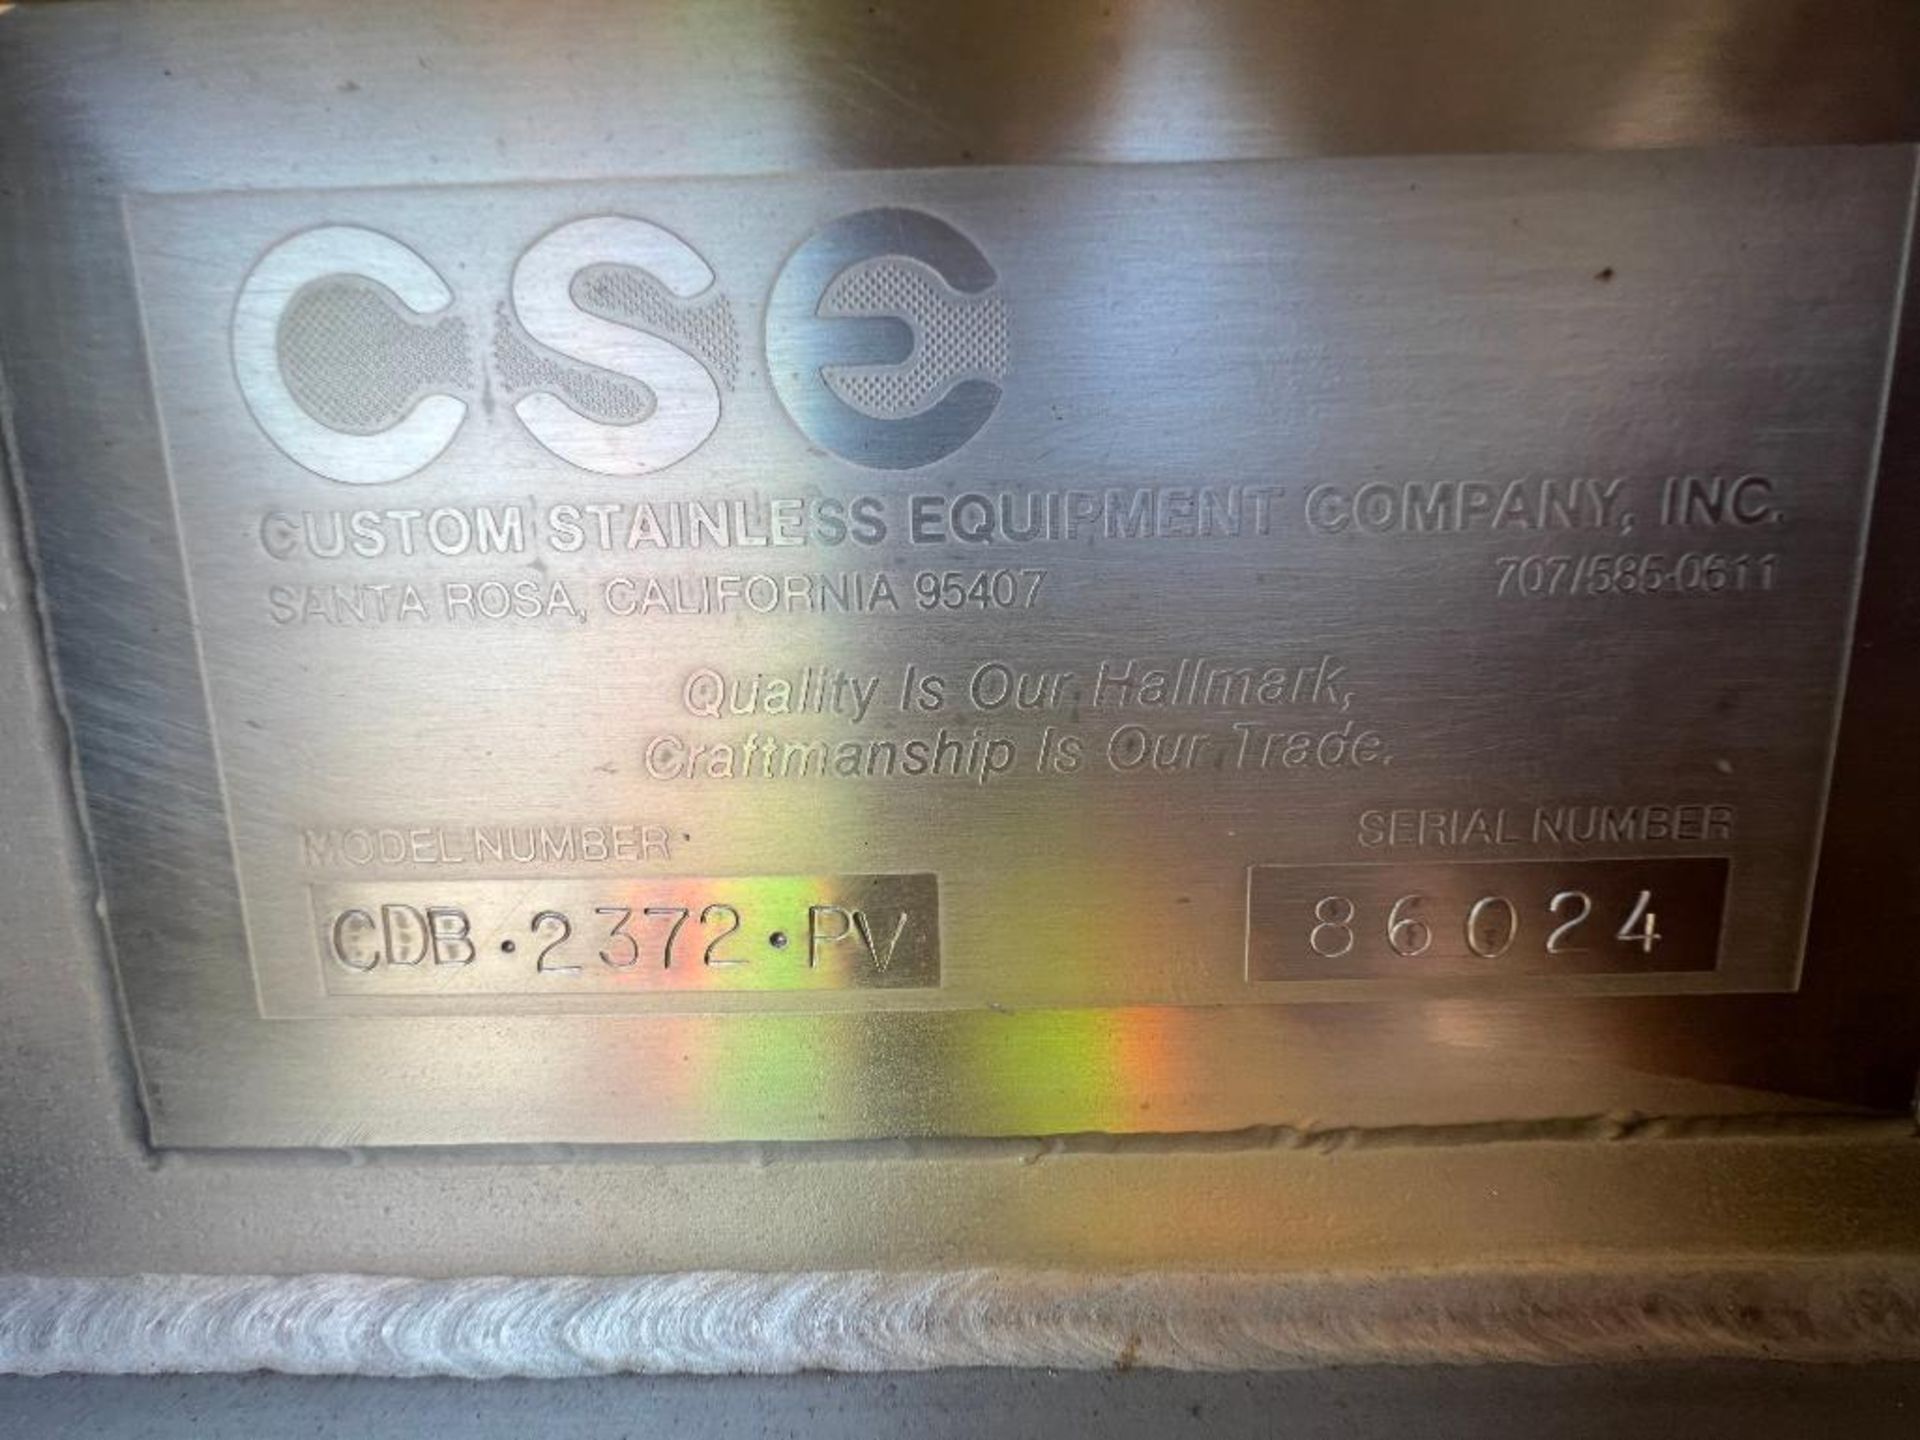 CSE stainless steel blender, model: CDB2372PV - Image 2 of 6